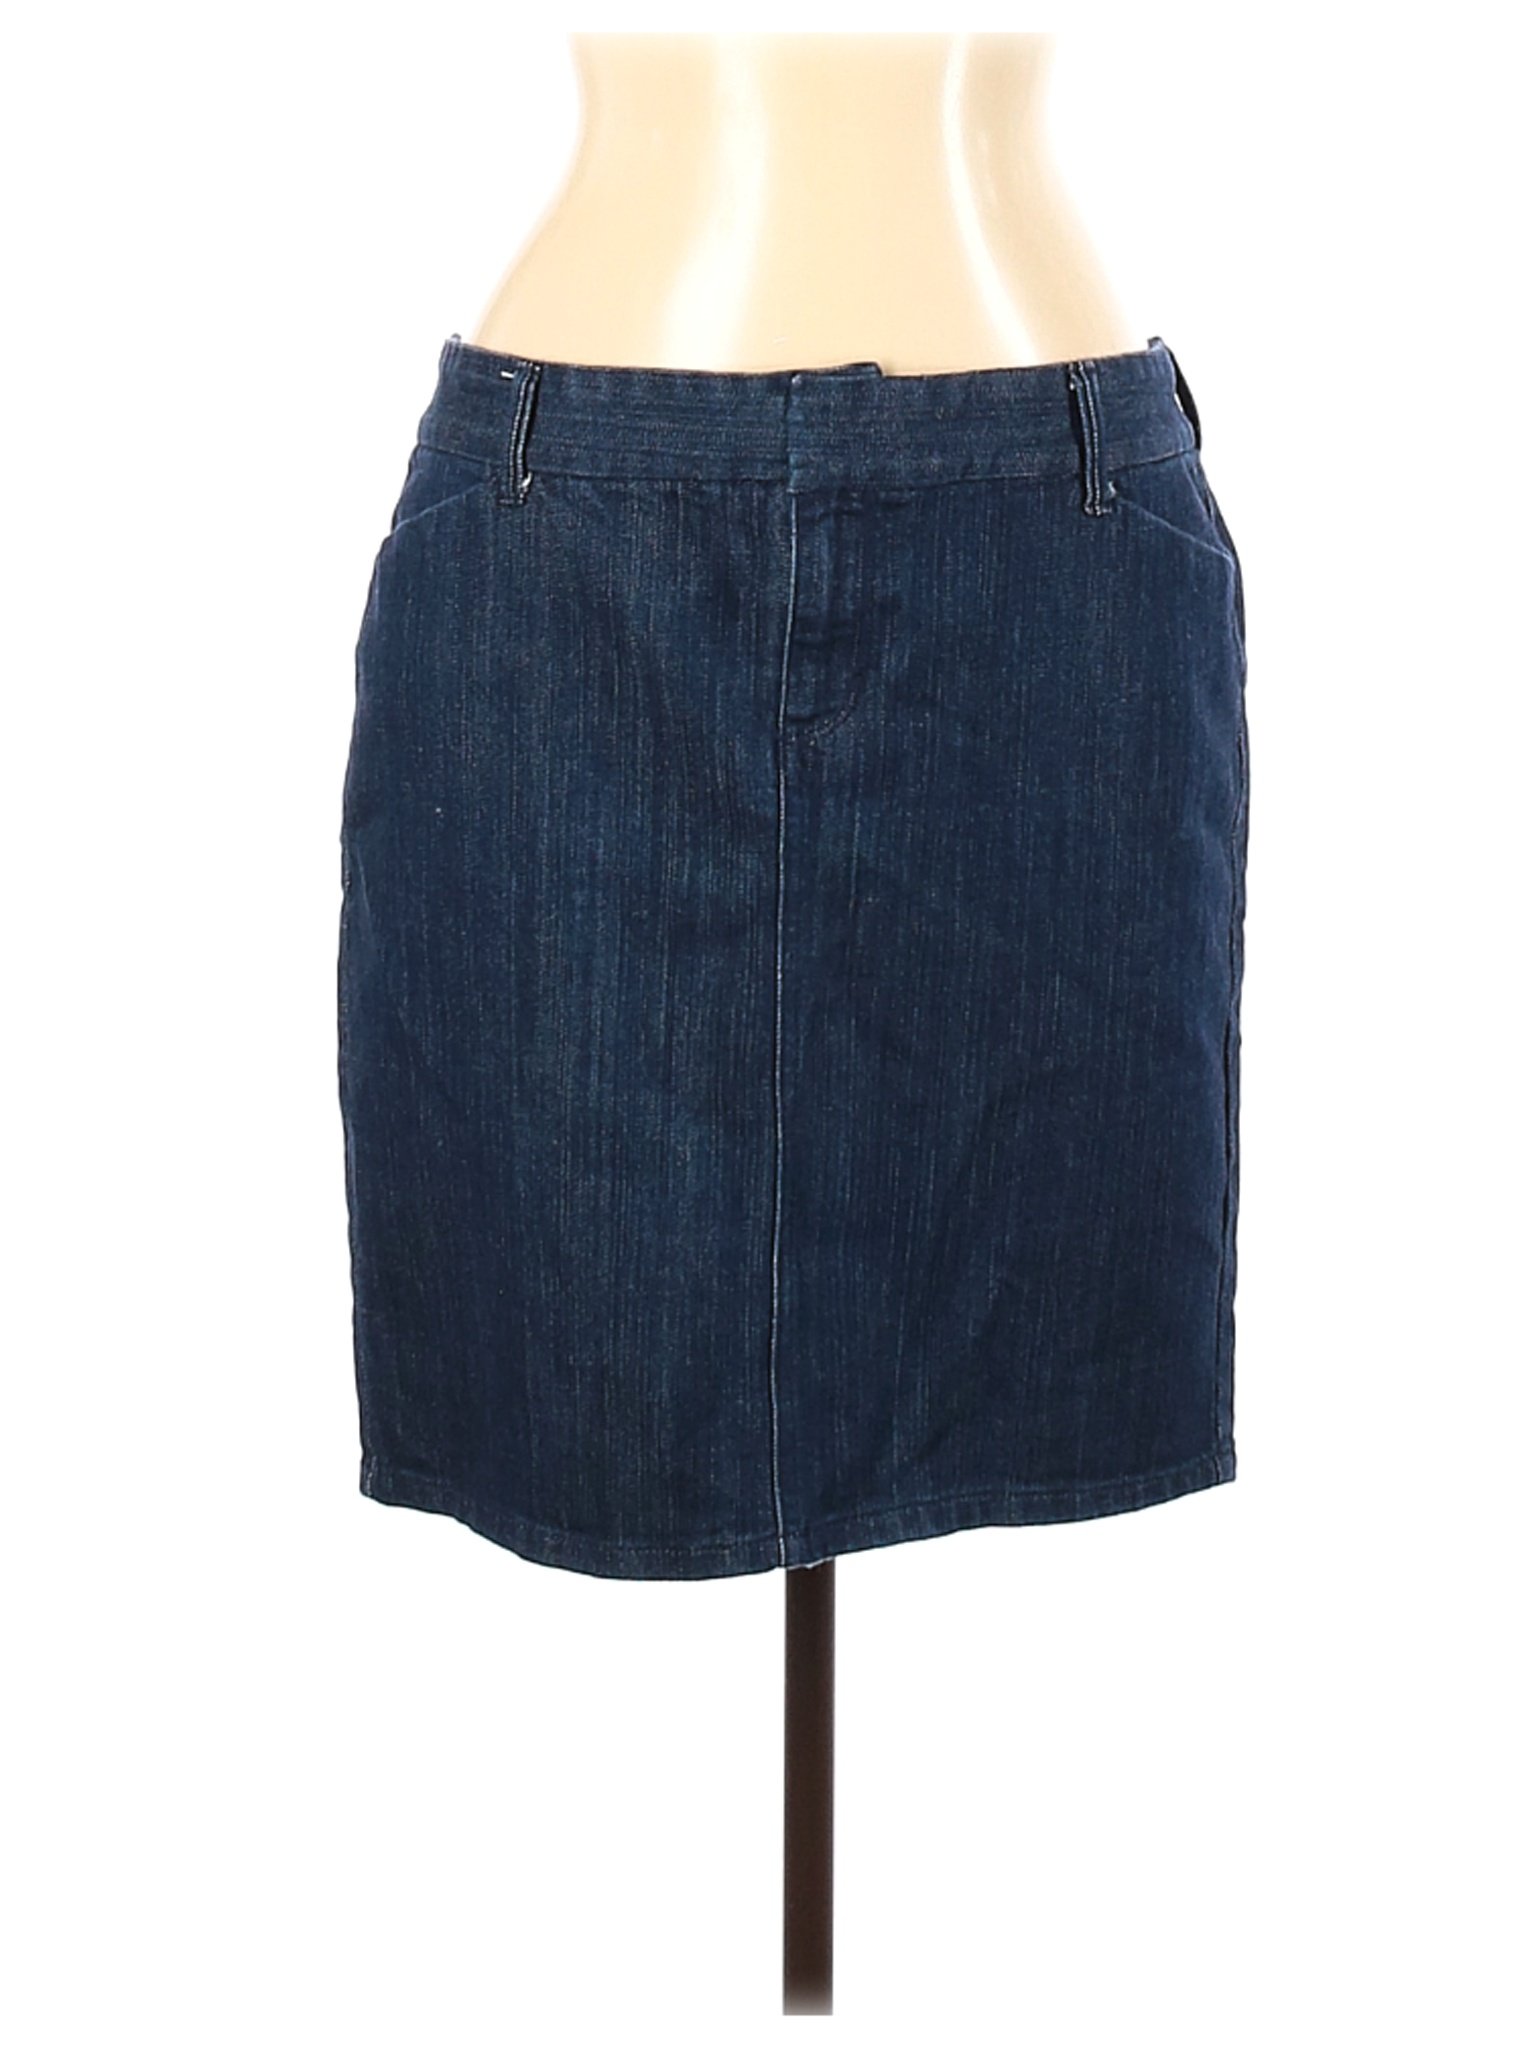 Old Navy Women Blue Denim Skirt 12 | eBay